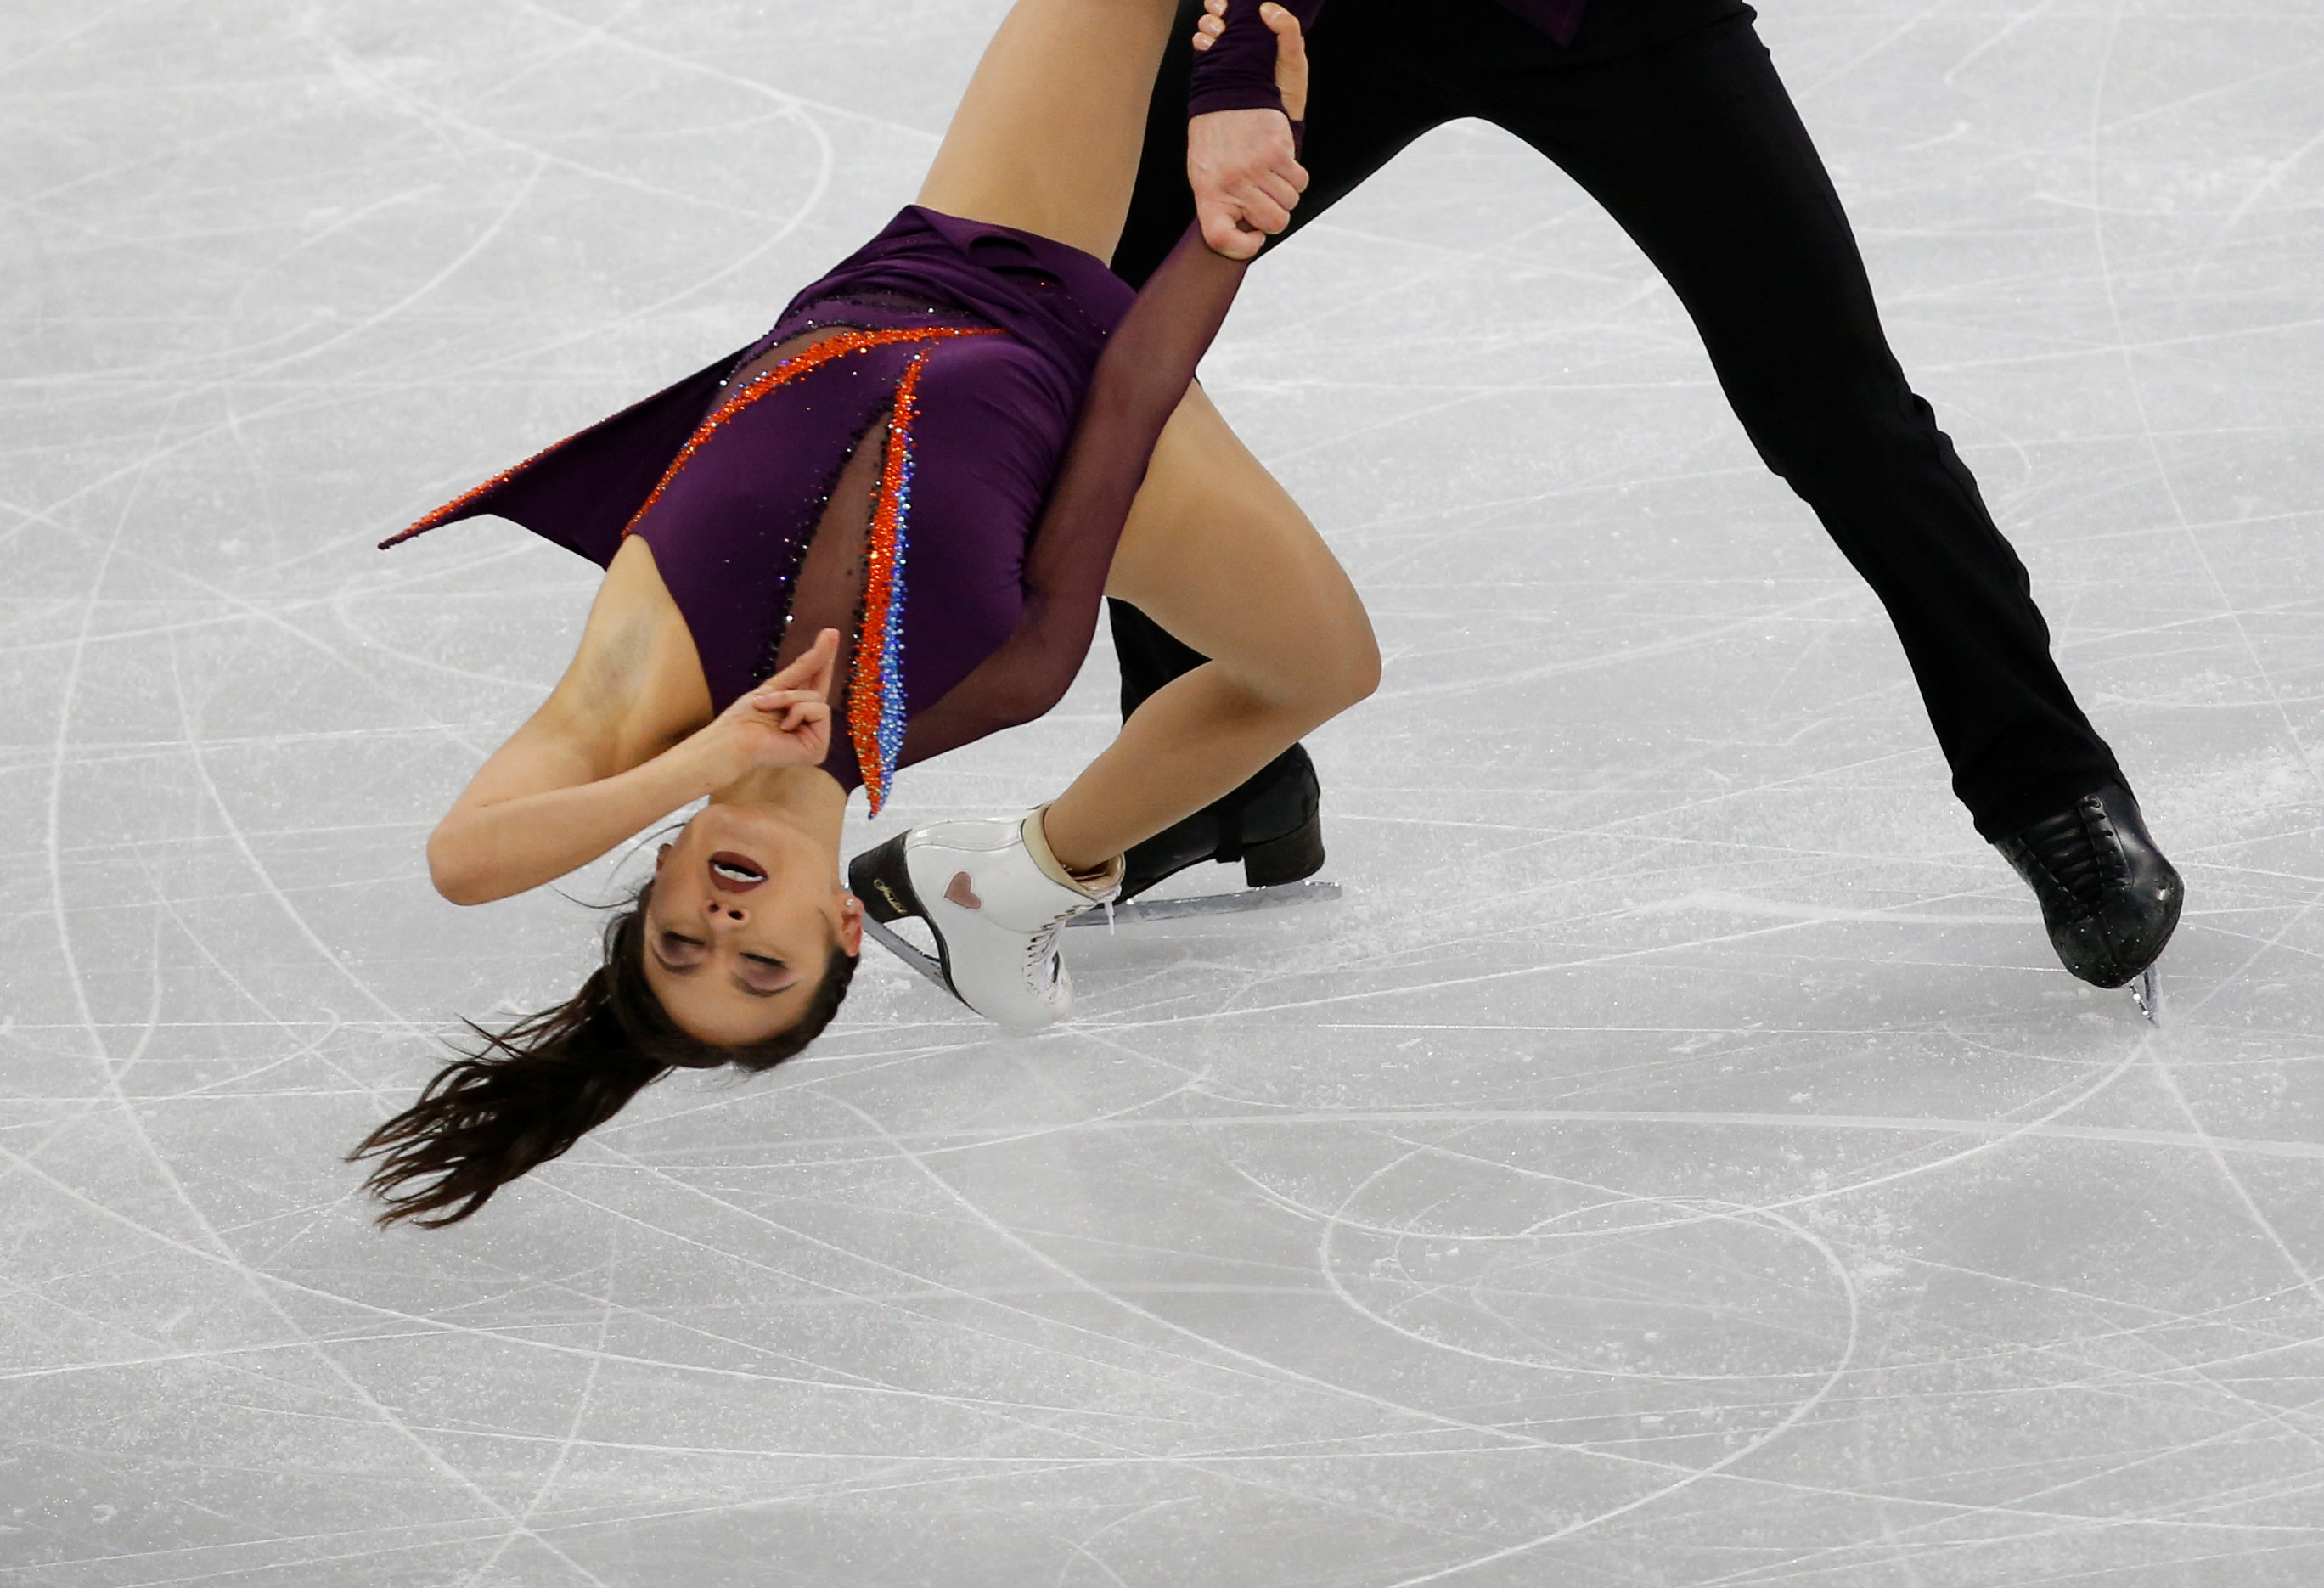 فتاة تميل برأسها تجاه الأرض فى رقصه على الجليد بكوريا الجنوبية